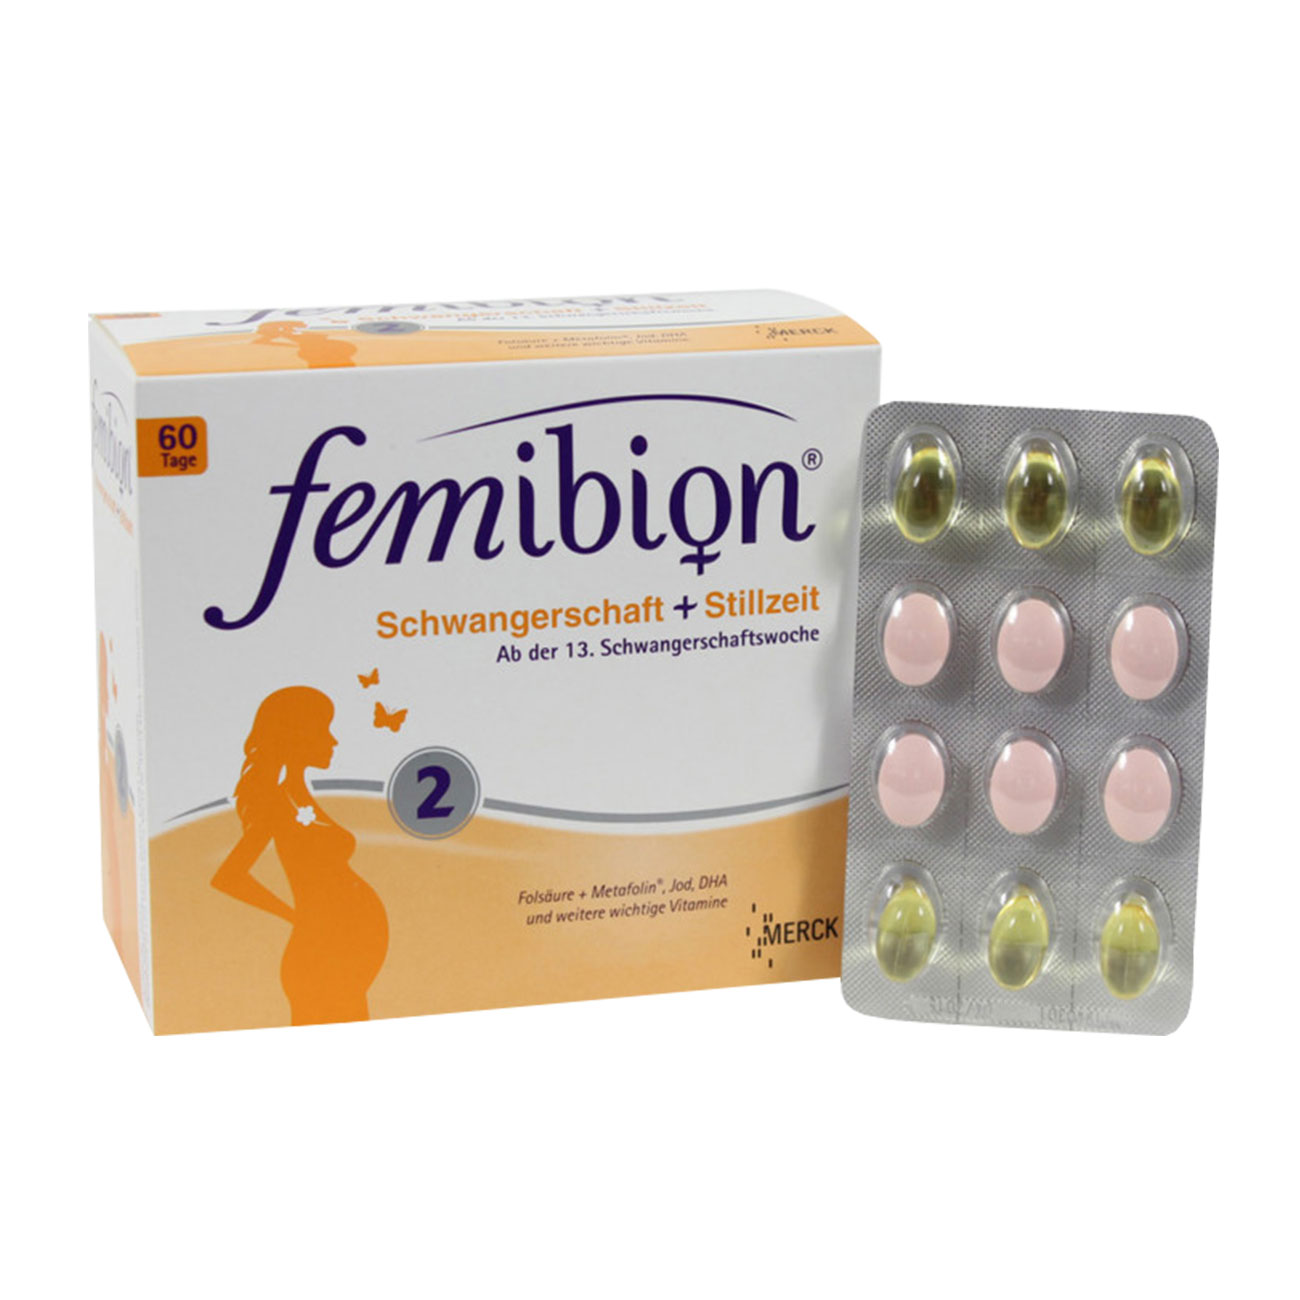 Фемибион 2 аптека. Витамины фемибион 2 новая формула. Таблетки для беременных фемибион 1. Фемибион 2 таблетки.